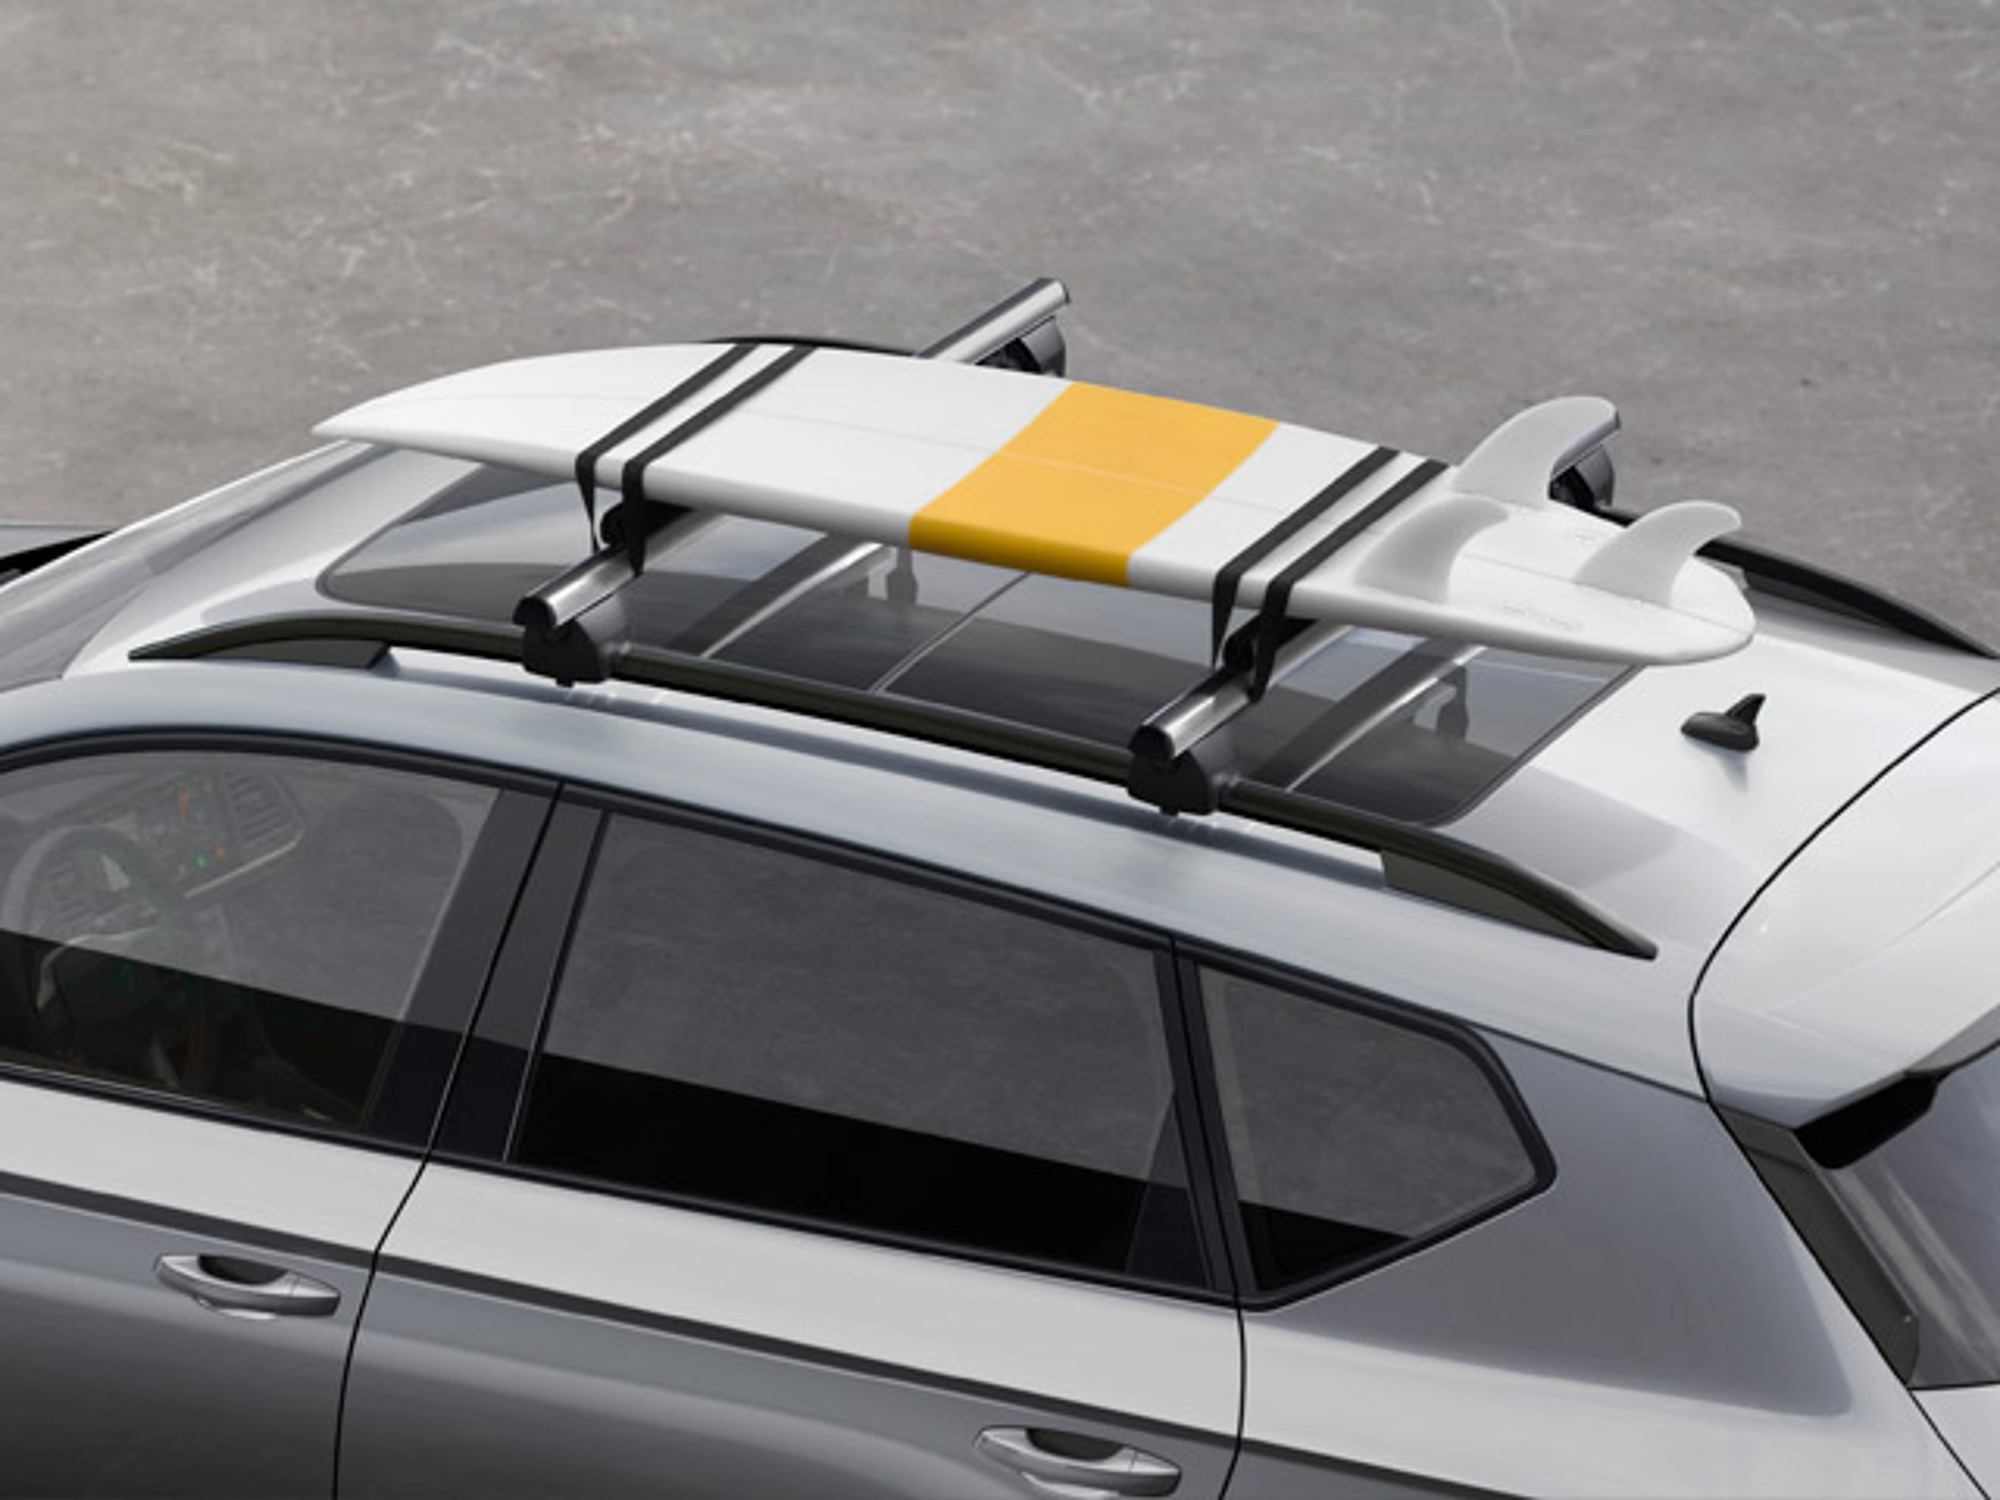 Kit de racloirs (Support pour planche de surf, porte-bagages) Hyundai i30  [GD] jusqu'à 80% moins cher.